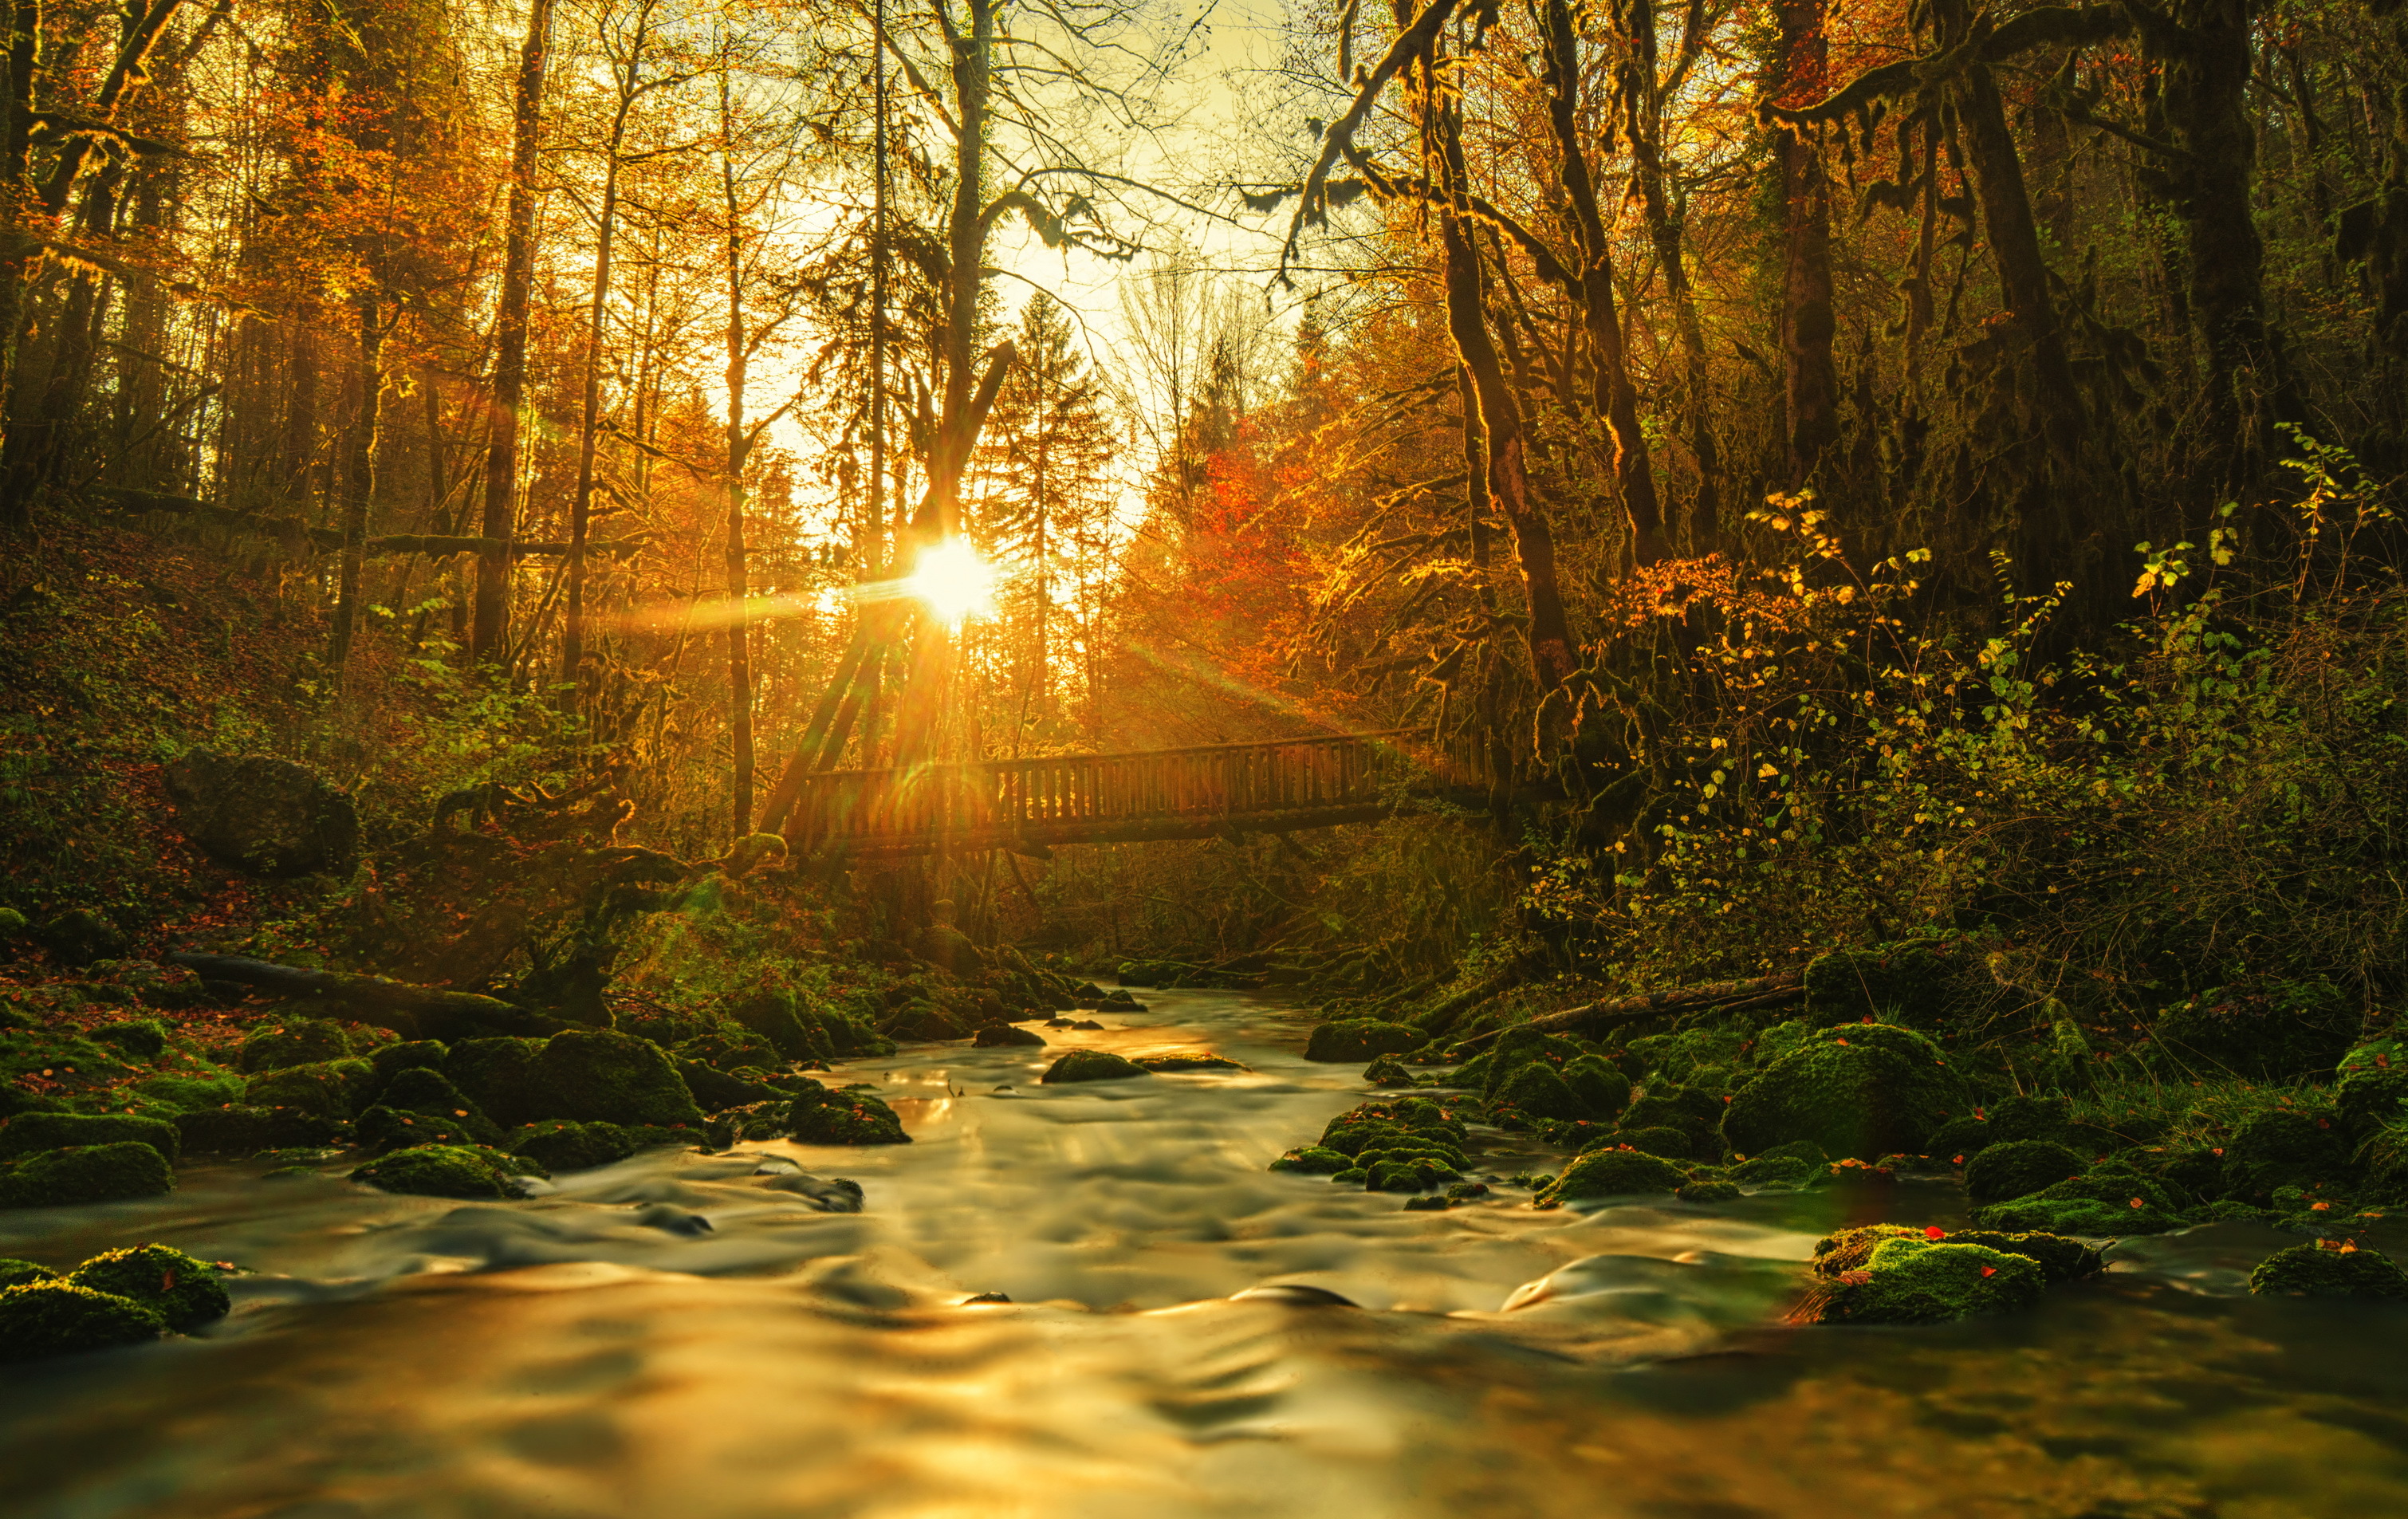 Звуки природы усыпляющее. Ручей в лесу. "Солнце в лесу". Осень лес ручей солнце. Утро в лесу.